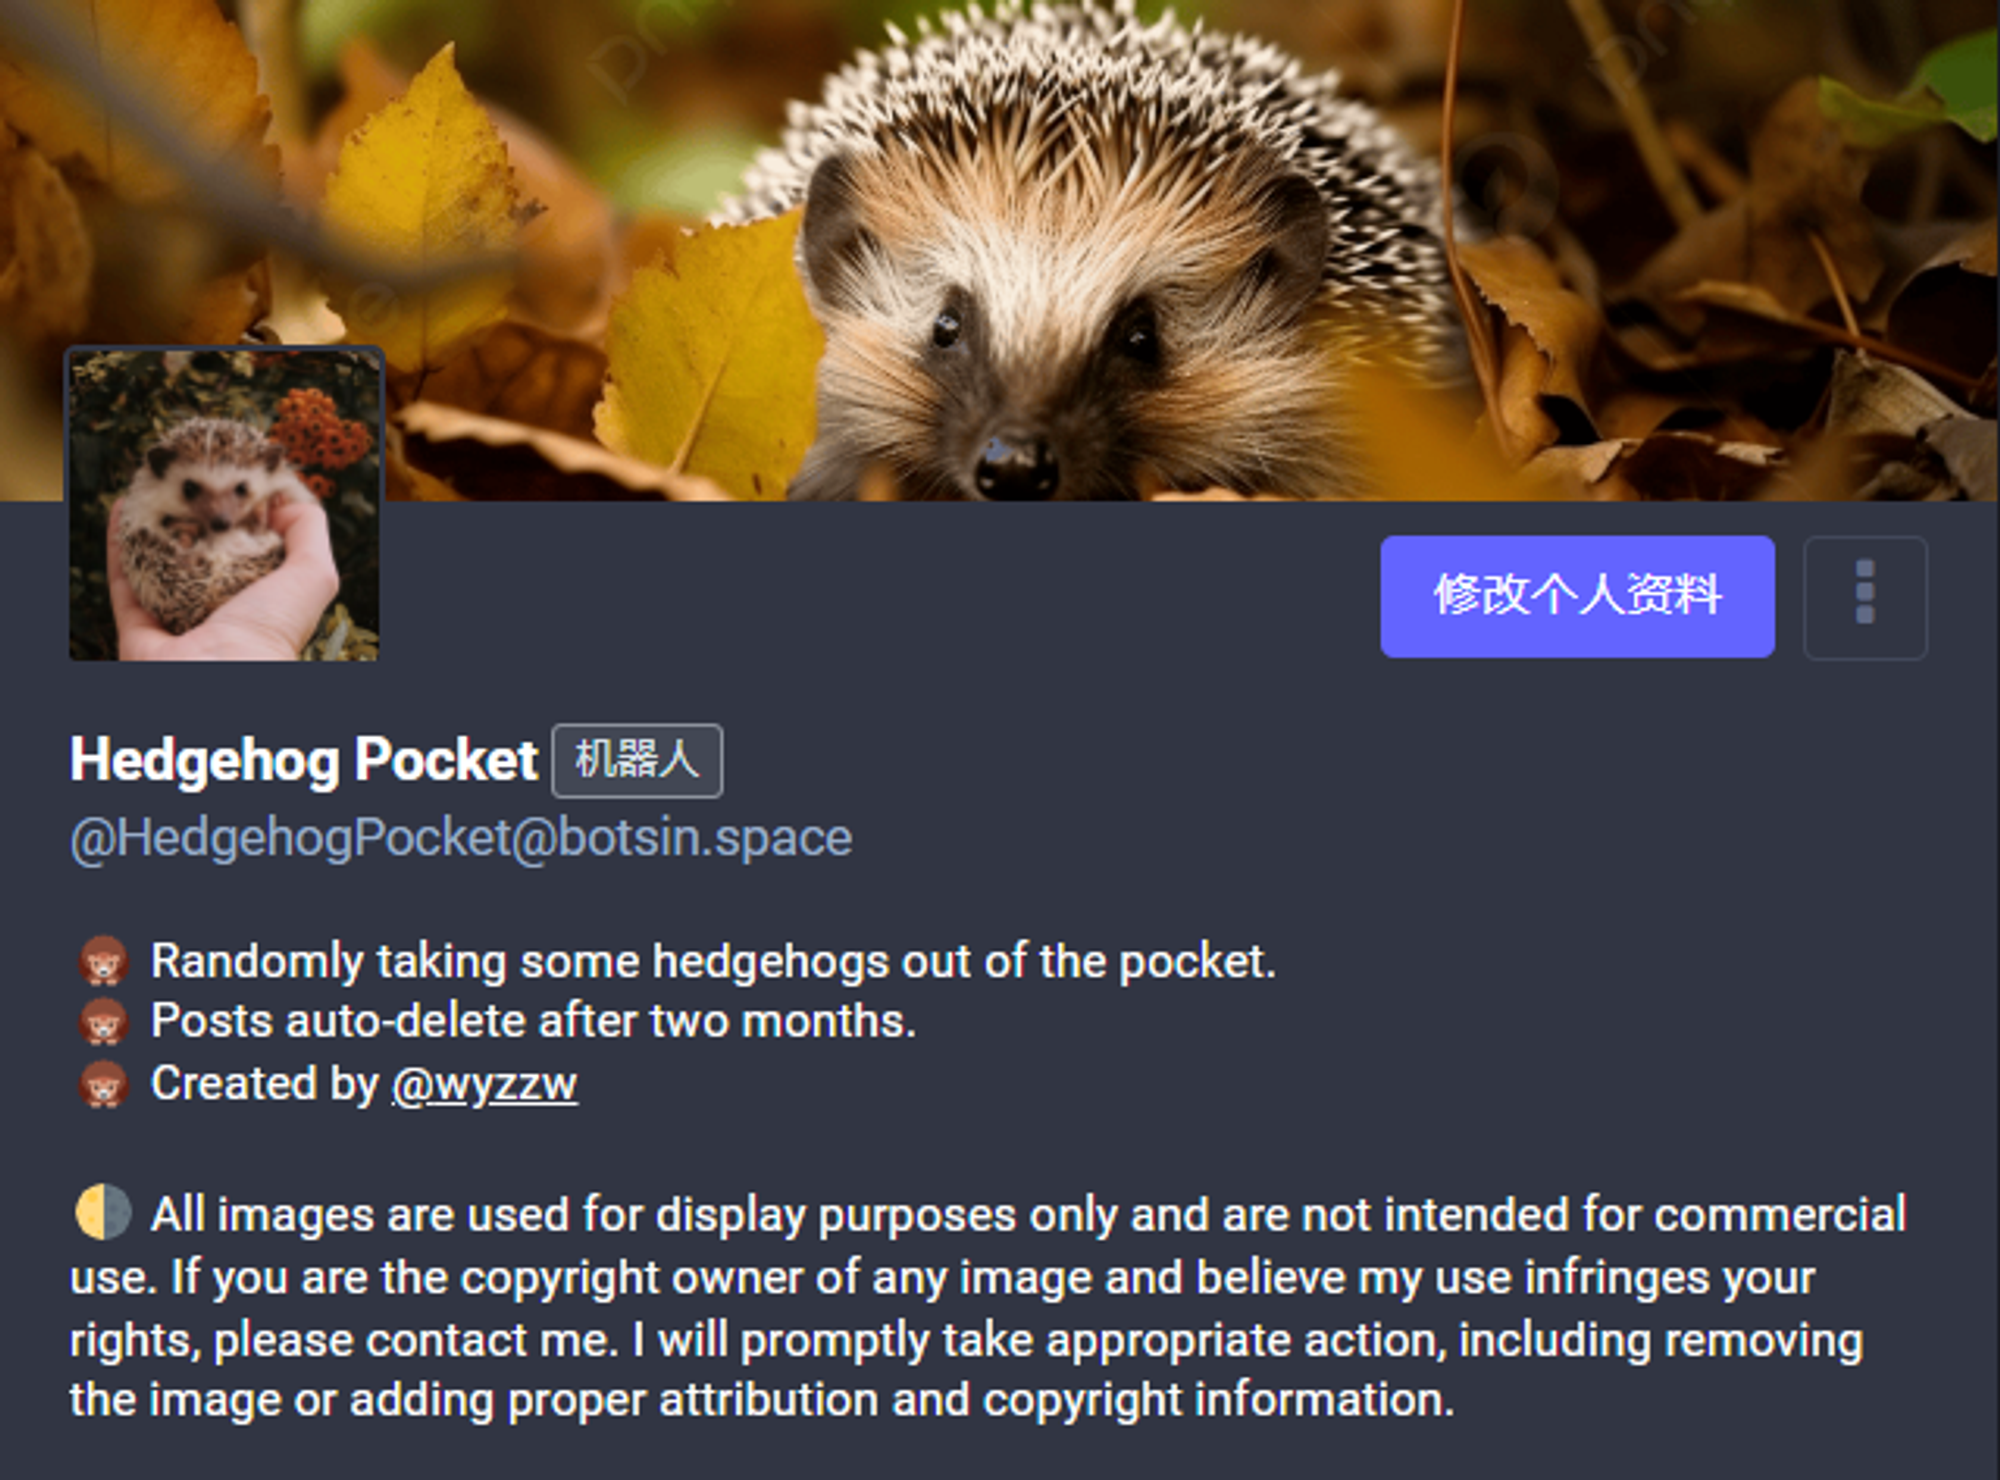 Hedgehog Pocket